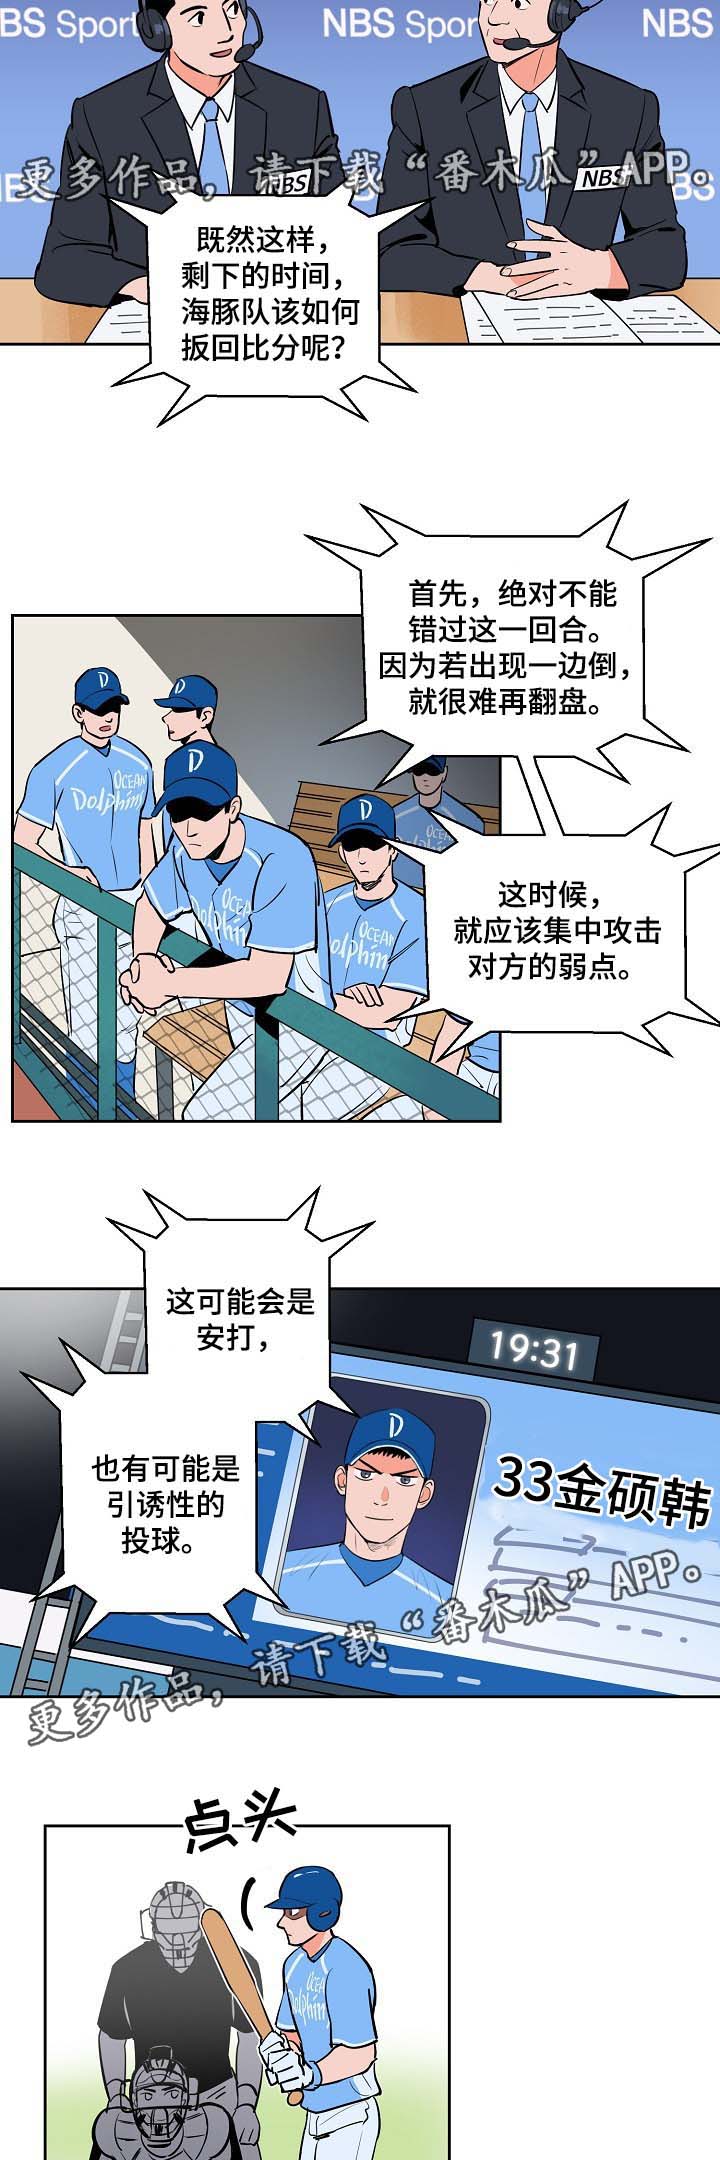 第87章釜山棒球赛11